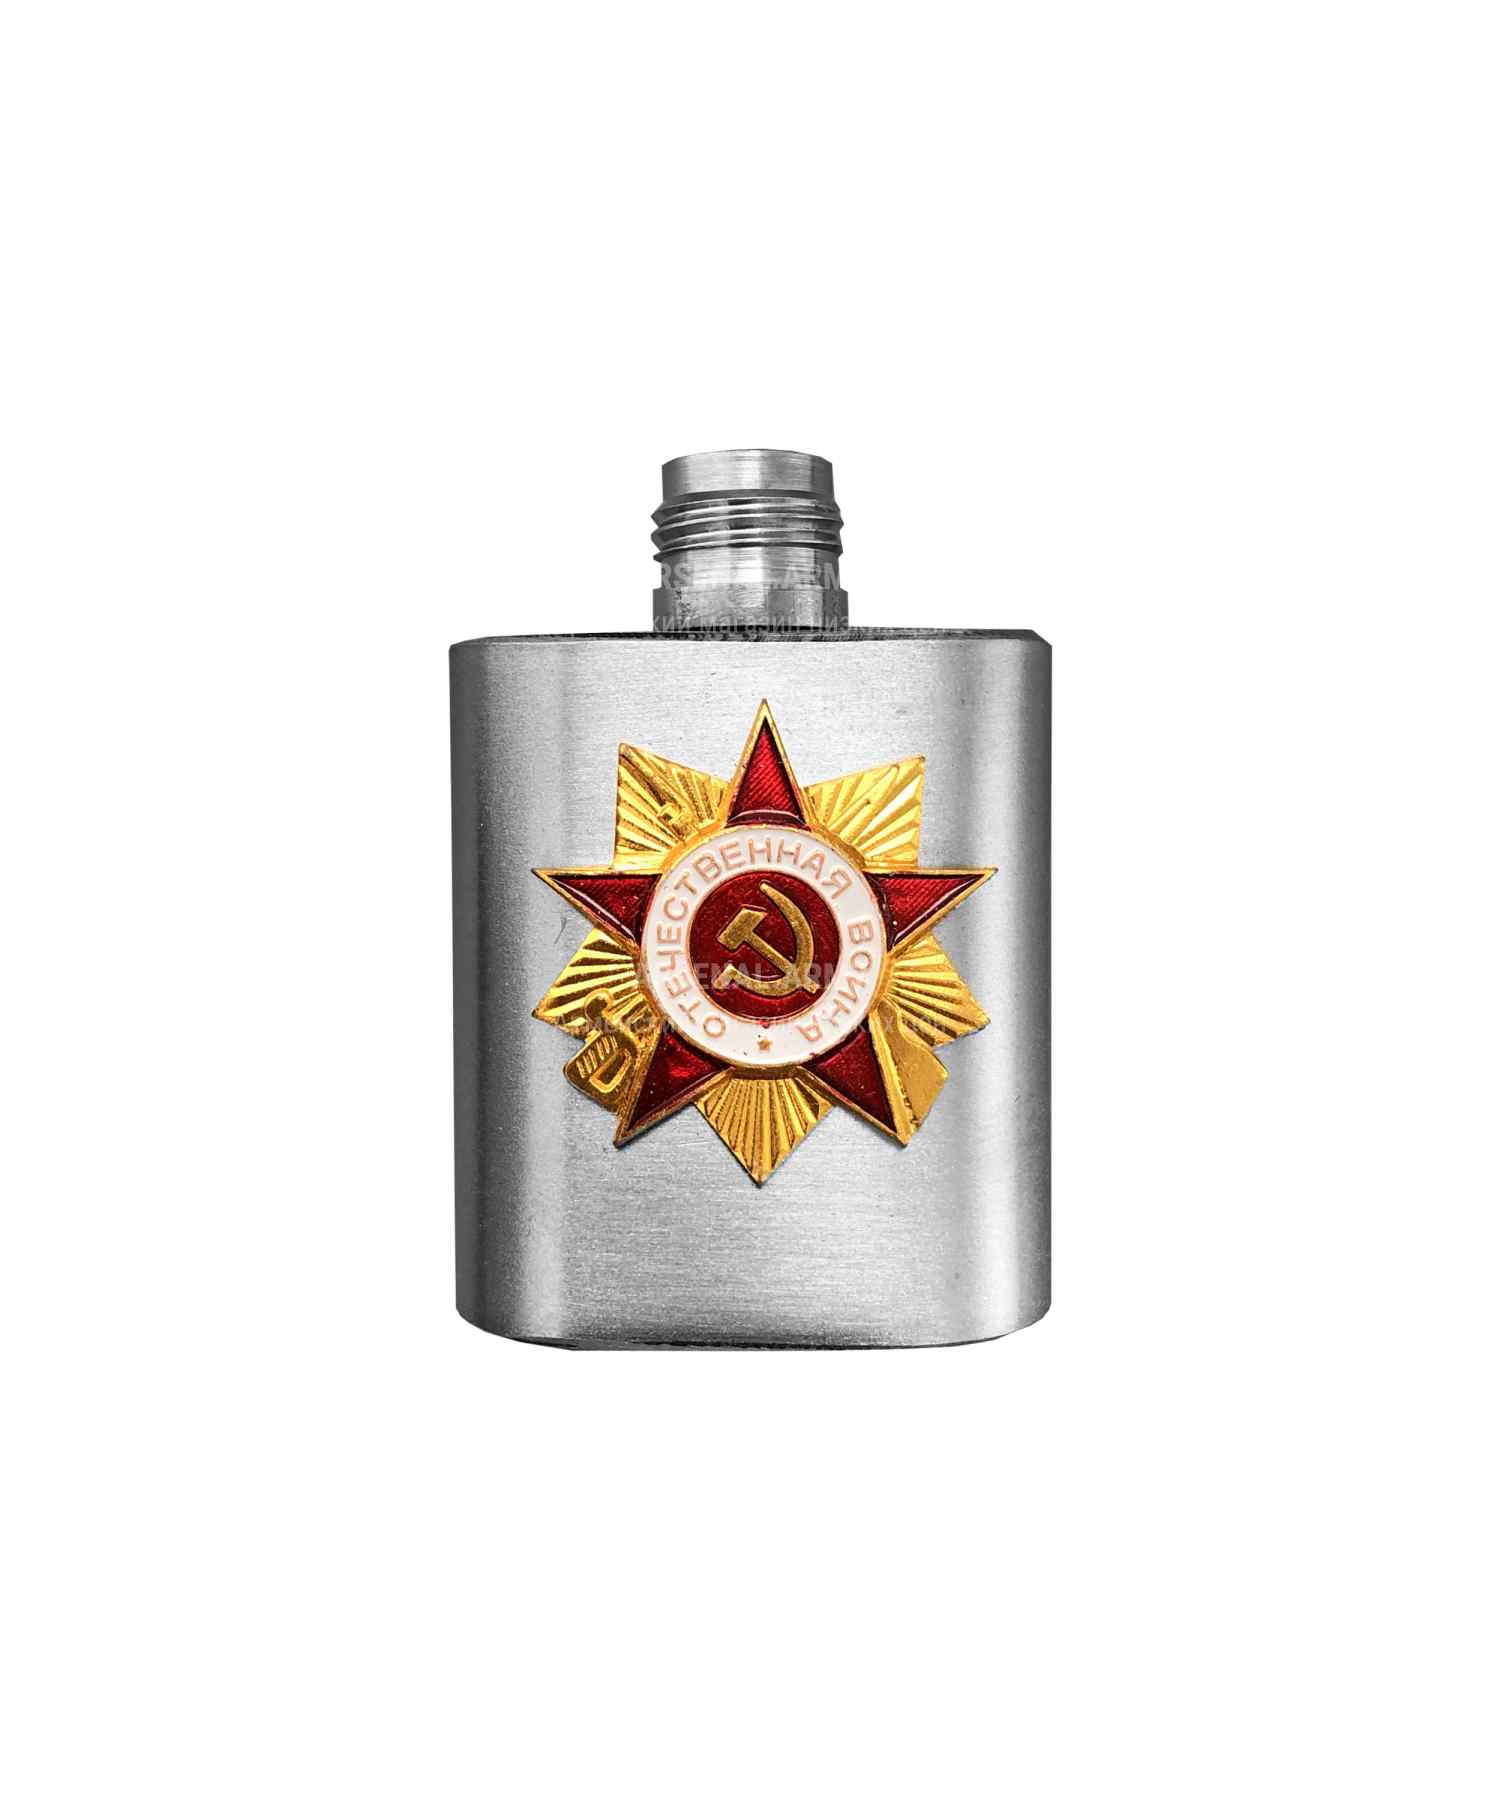 Фляжка брелок СССР Великая Отечественная Война